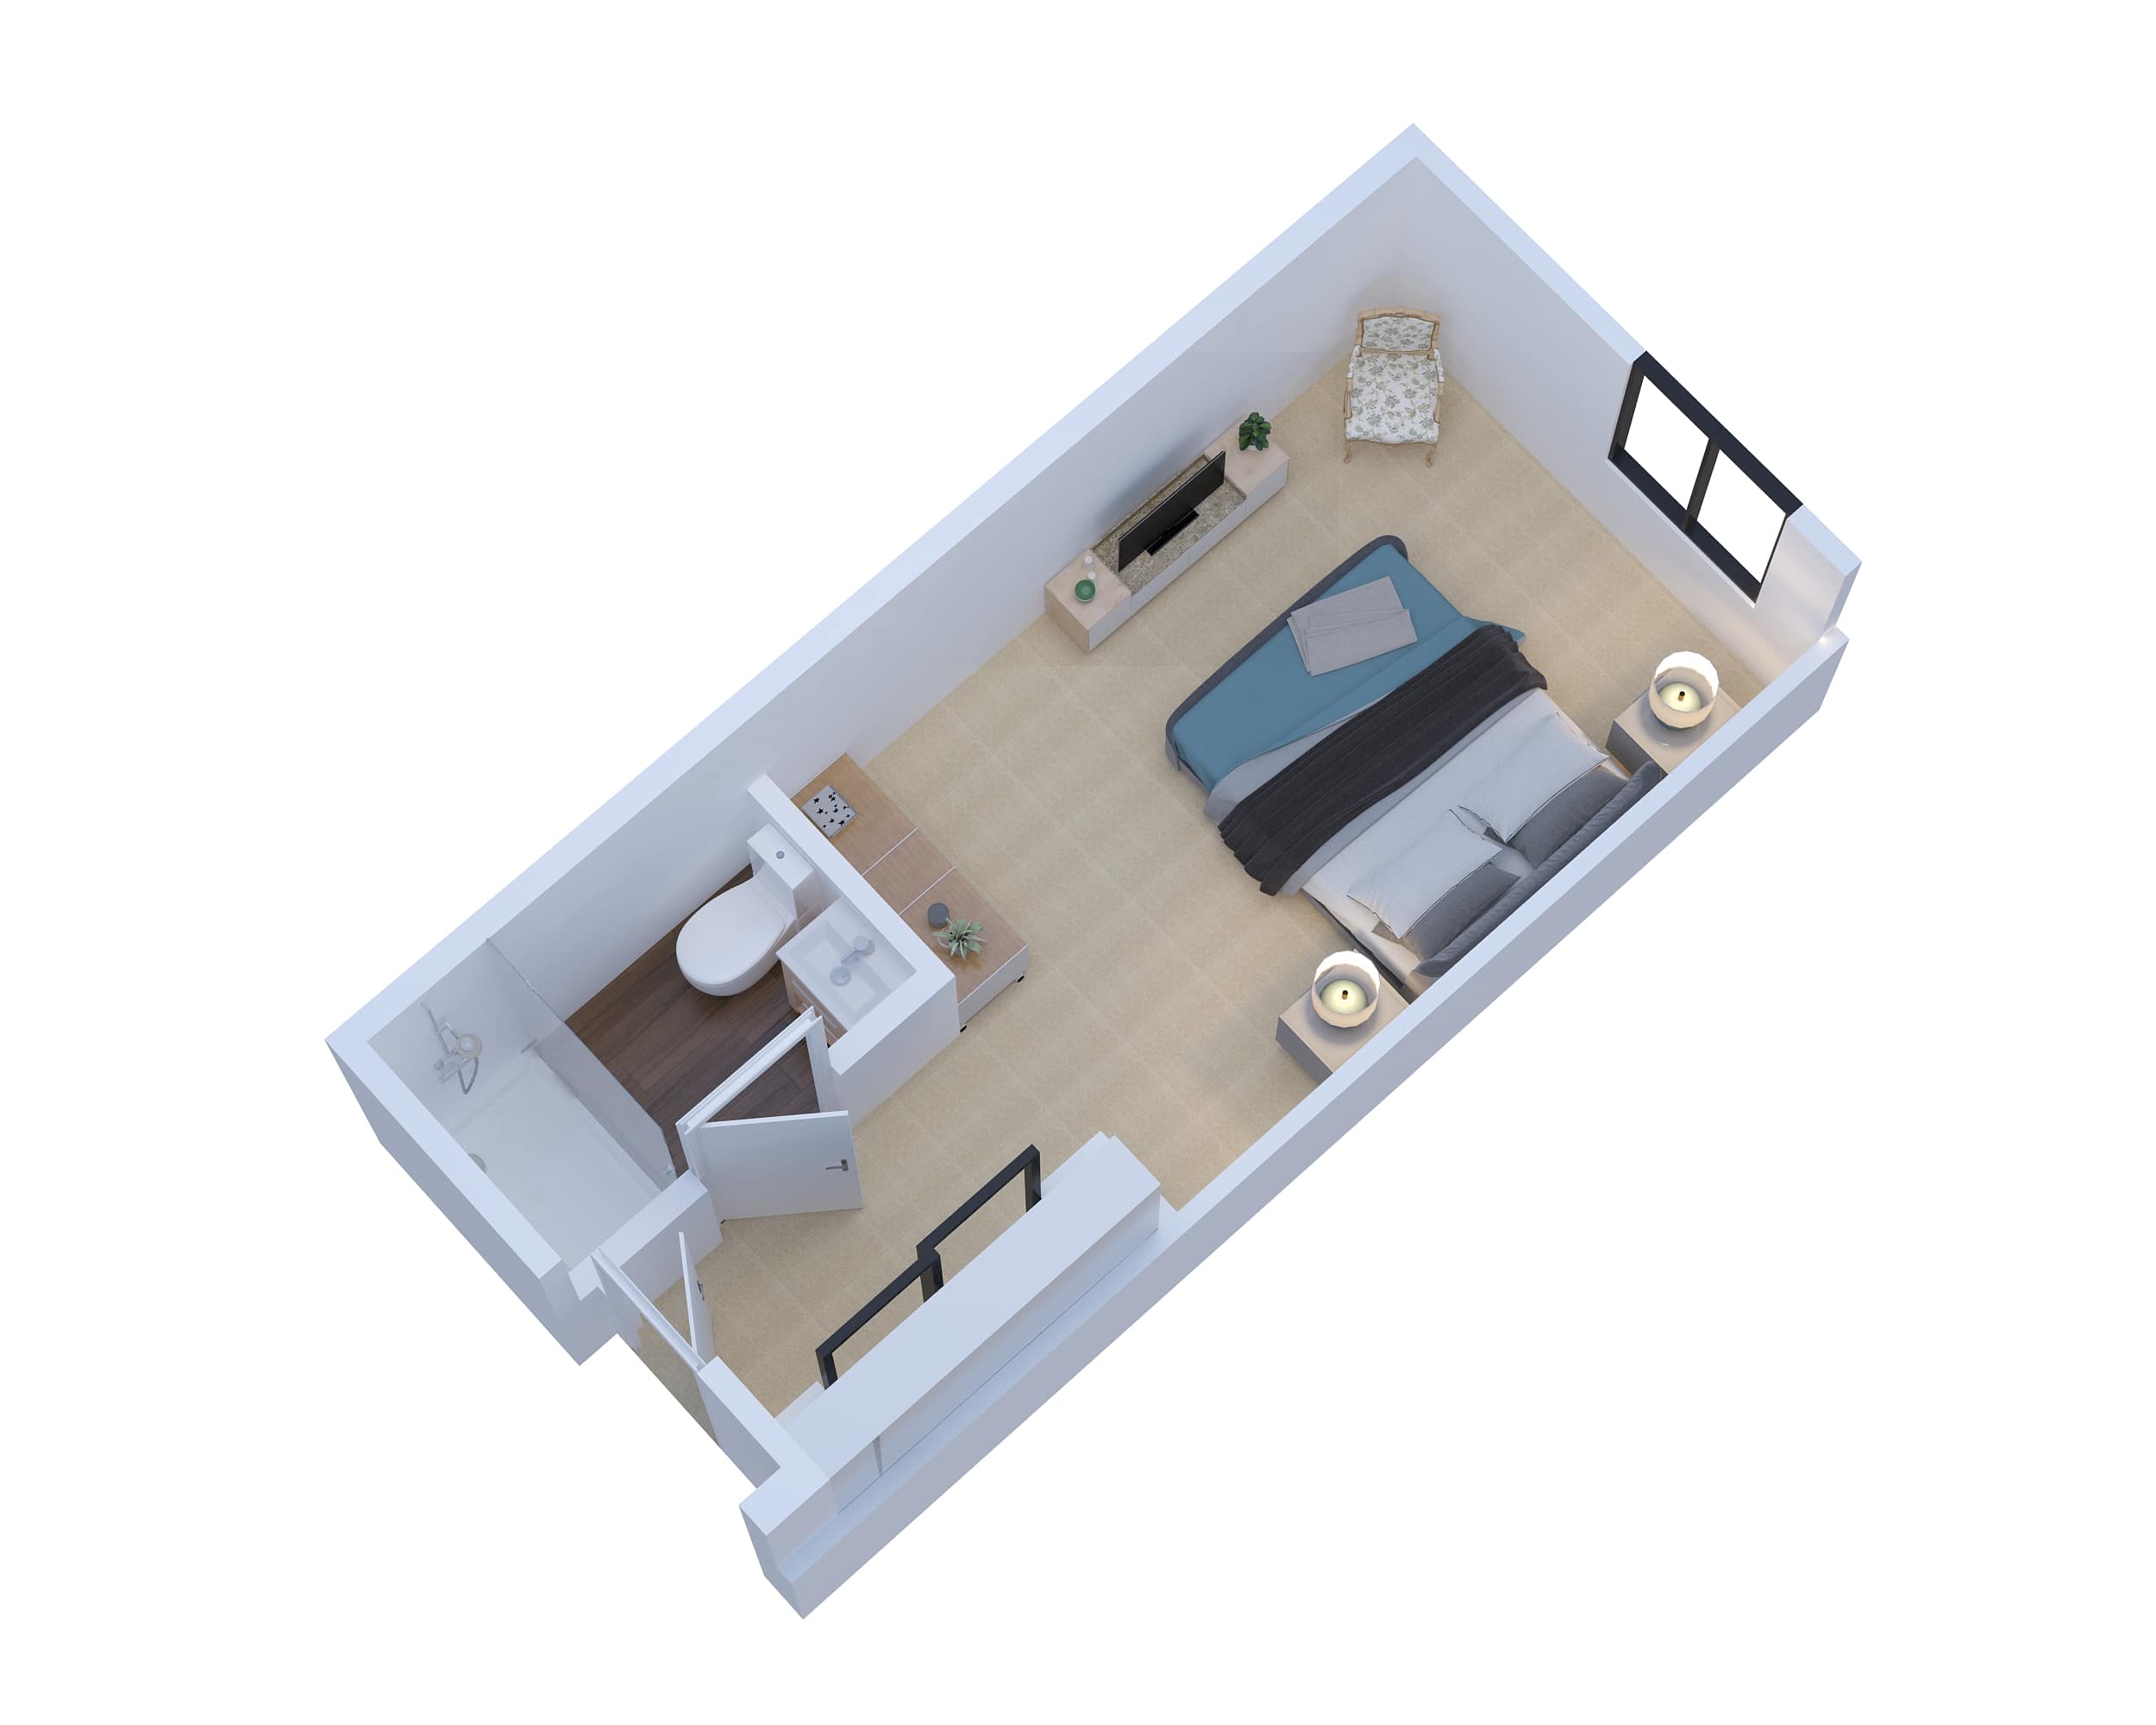 Maple Suite Floor Plan